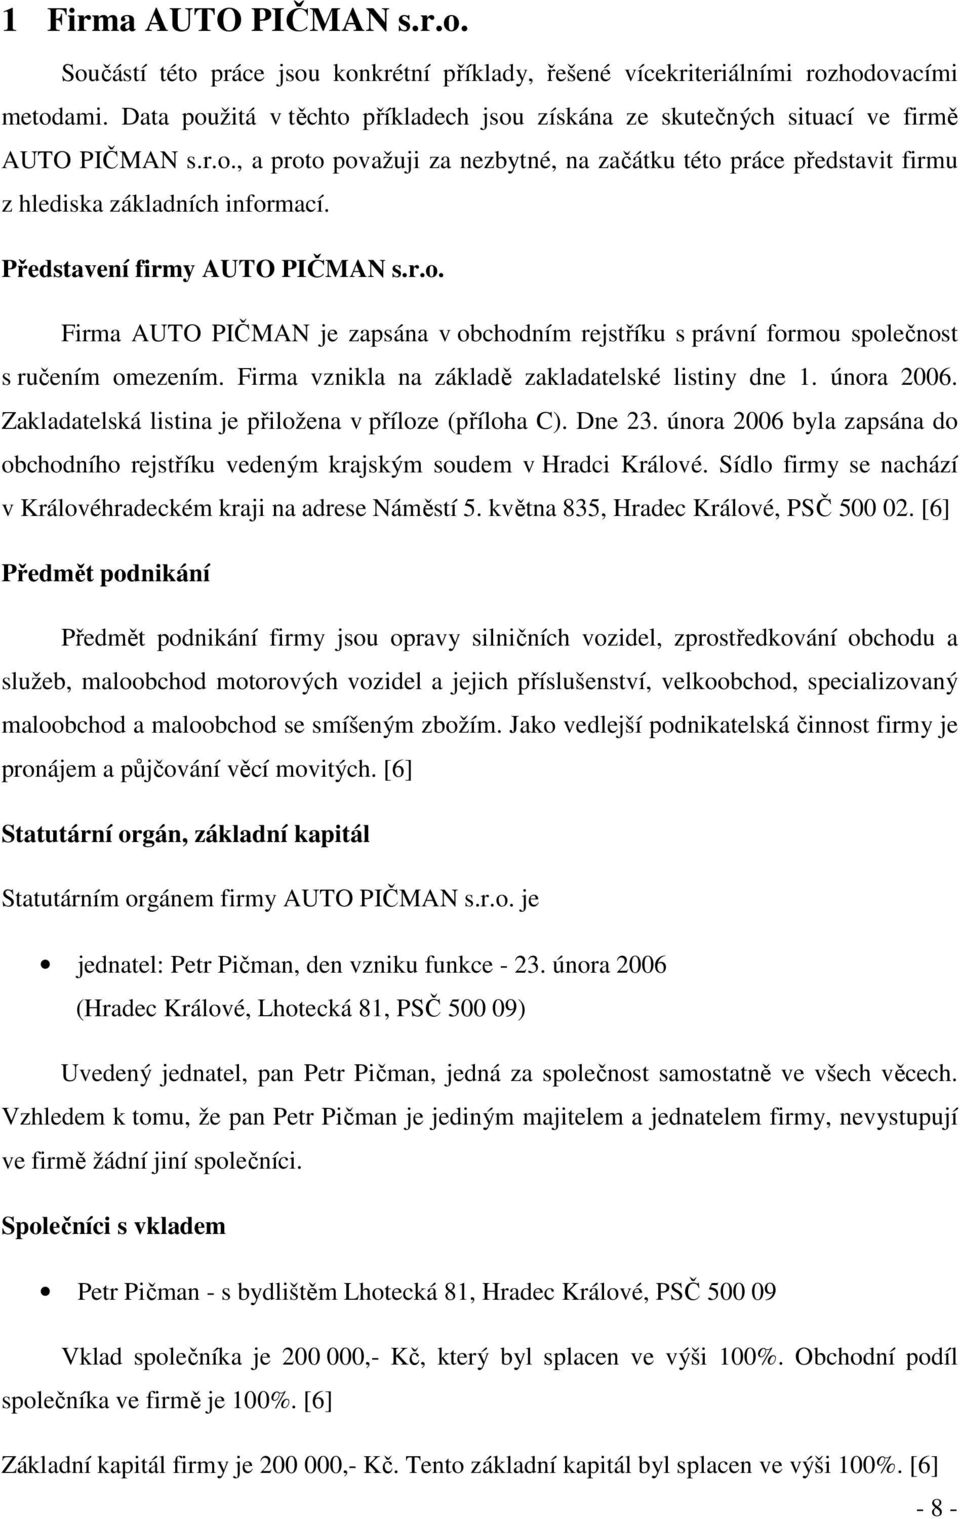 Představení firmy AUTO PIČMAN s.r.o. Firma AUTO PIČMAN je zapsána v obchodním rejstříku s právní formou společnost s ručením omezením. Firma vznikla na základě zakladatelské listiny dne 1. února 2006.